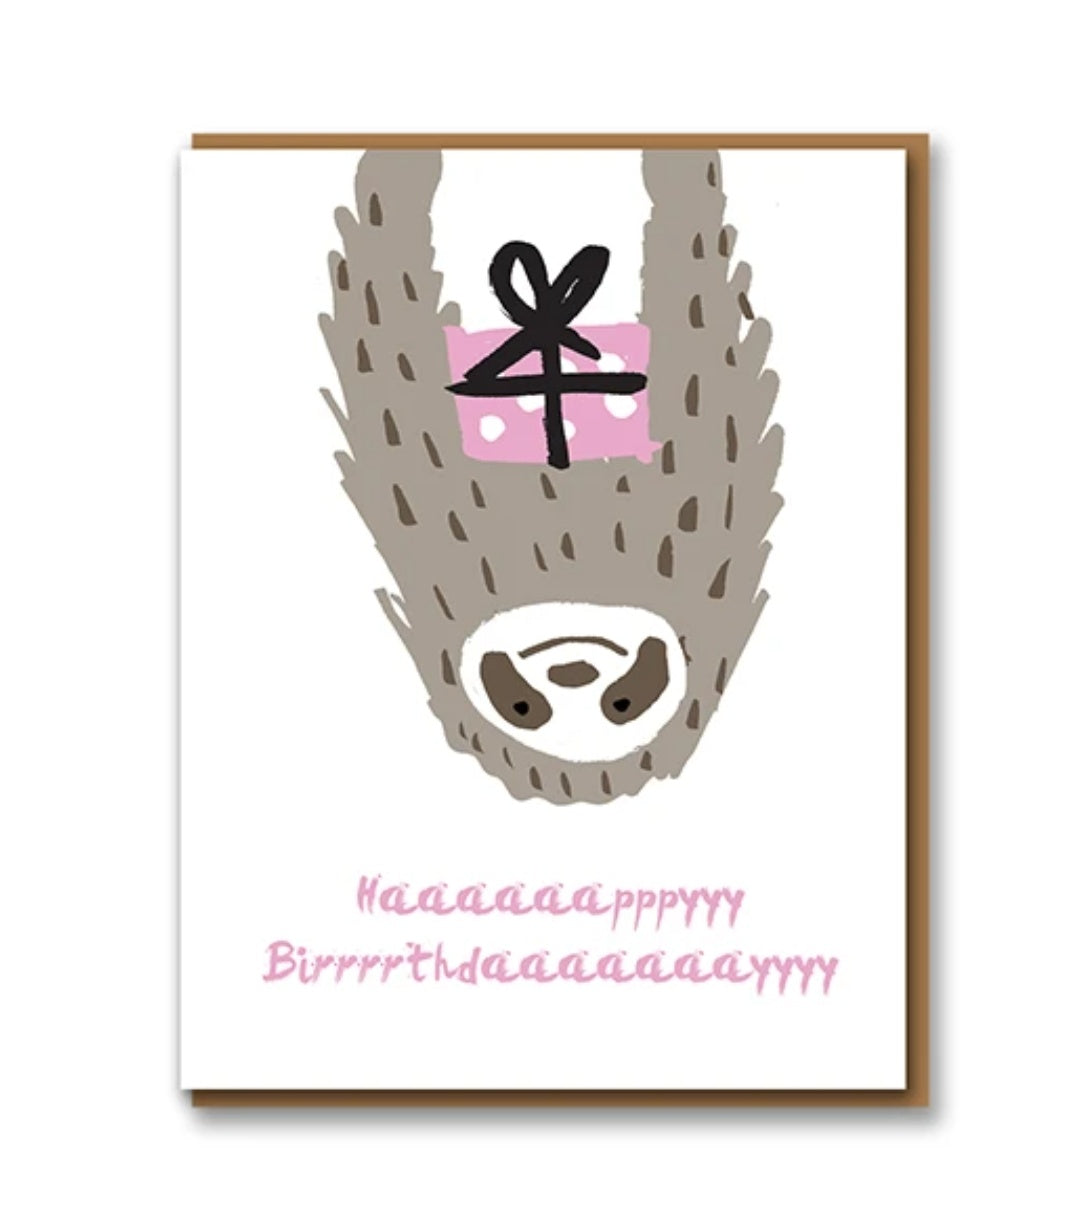 Haaappppy Birrrthdaaaaay Sloth Birthday Card